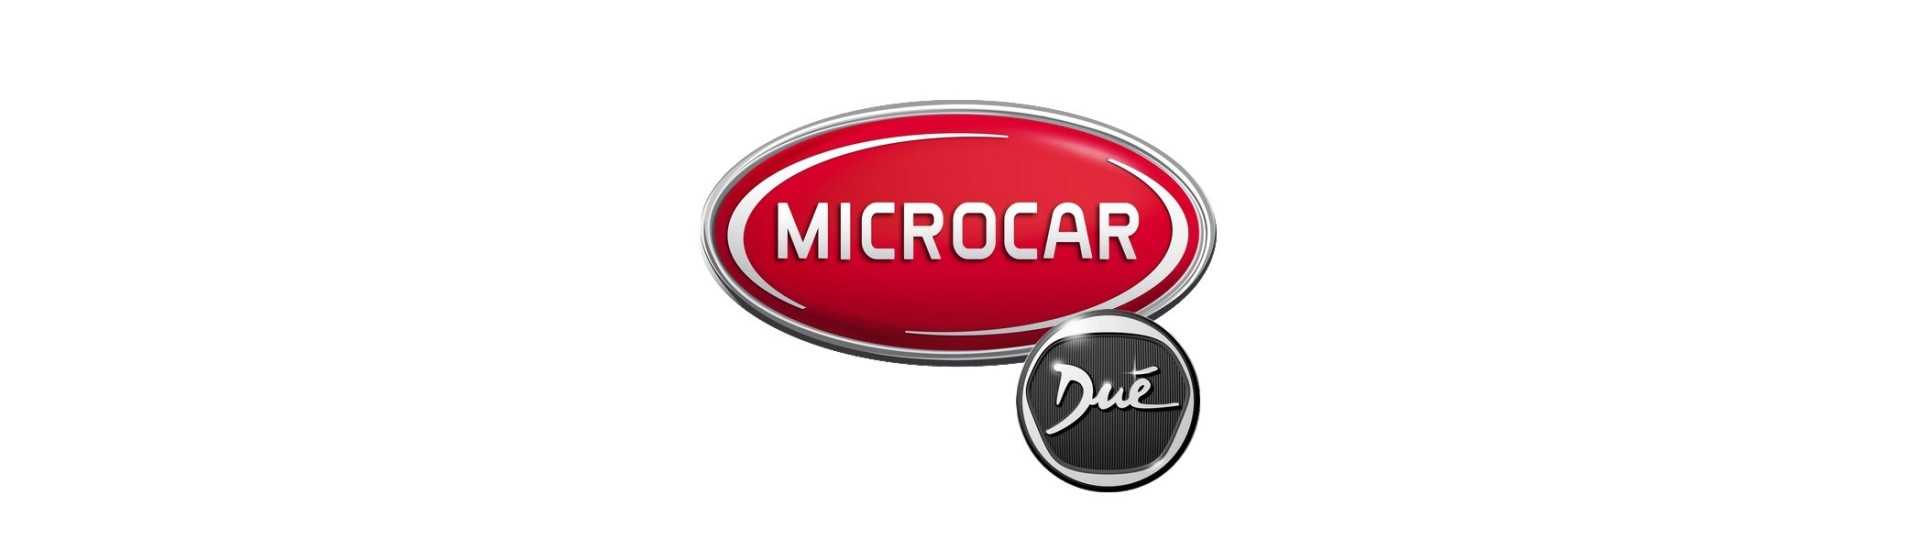 Pare contator com o melhor preço do carro sem uma permissão Microcar Dué